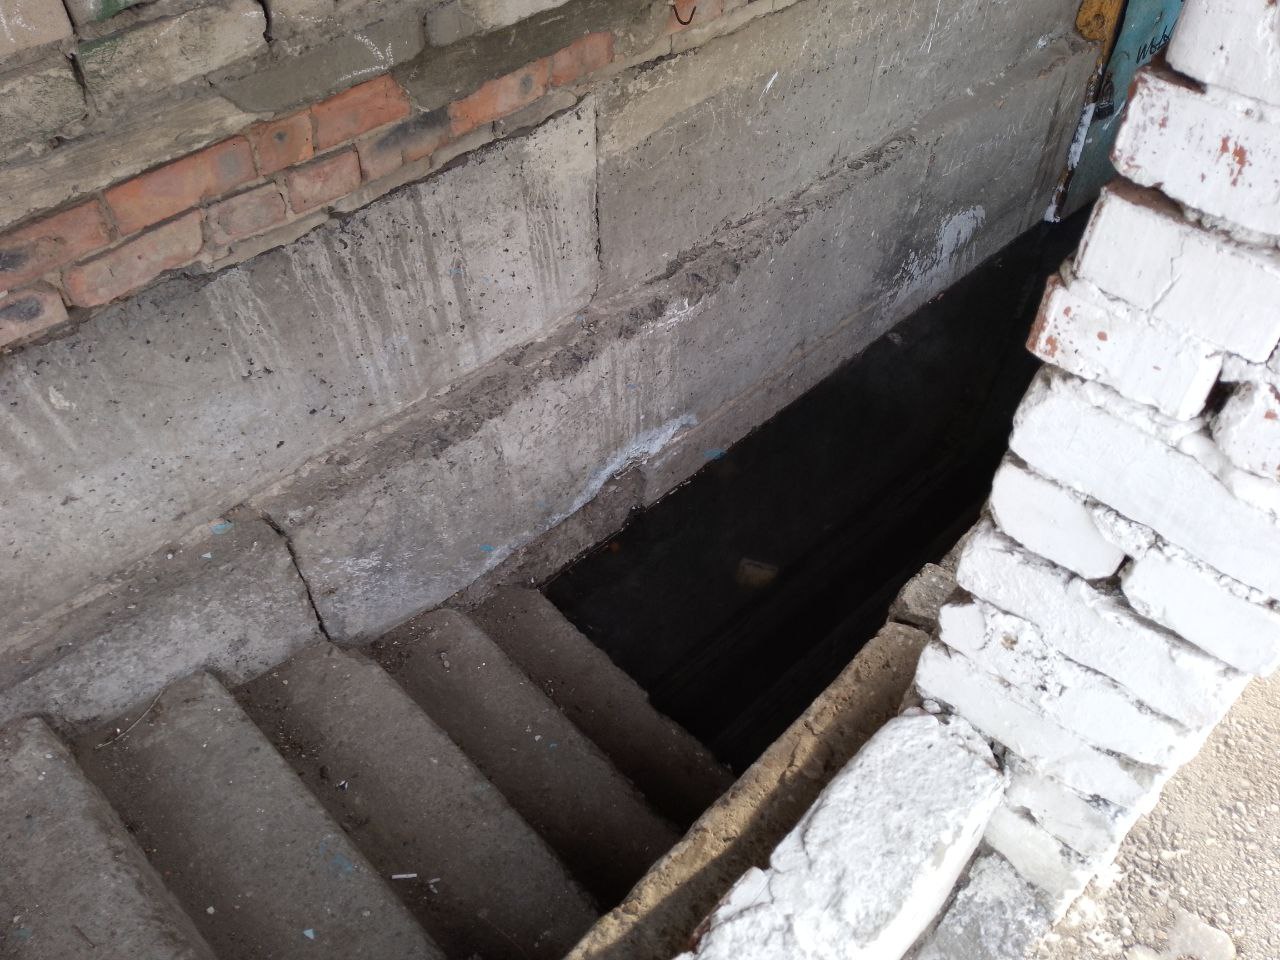 Дом в Чите задыхается от канализационных вод, вышедших в подвал